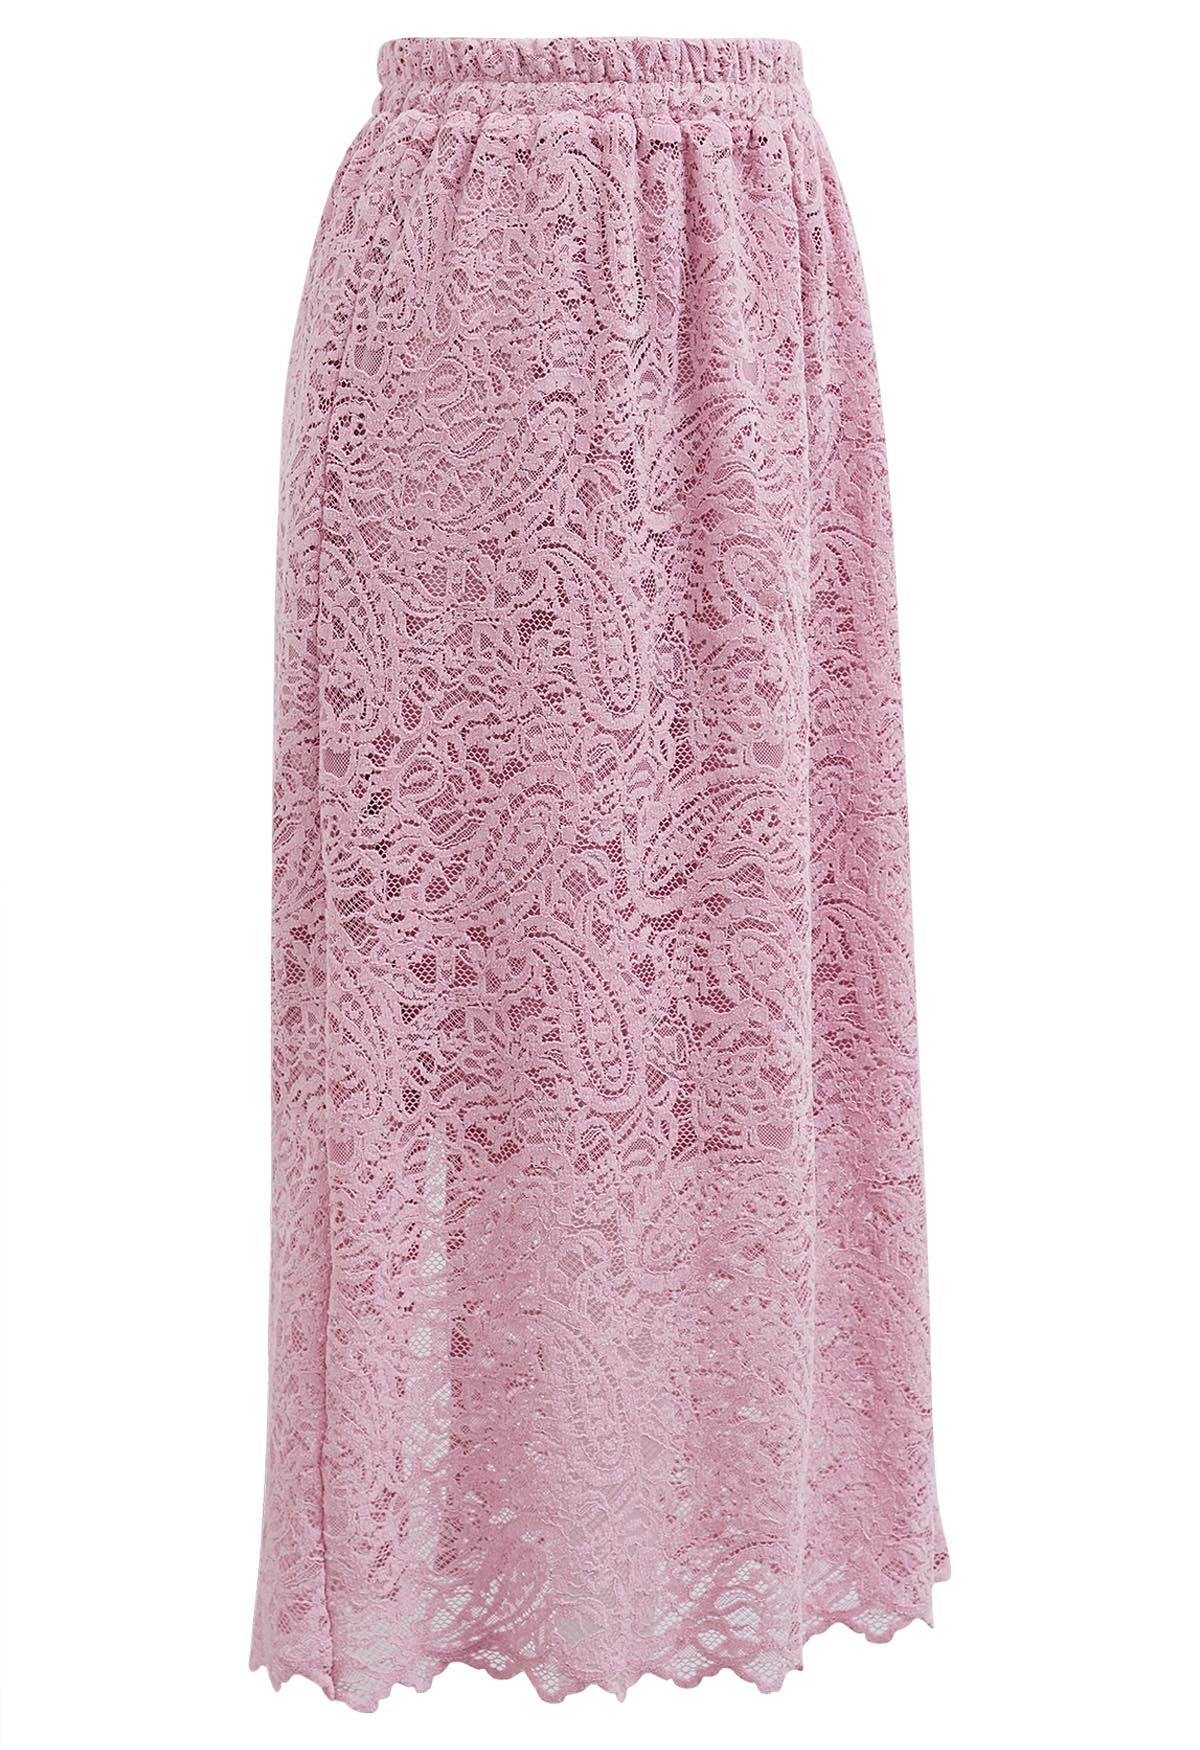 Falda midi de encaje calado intrincado en rosa